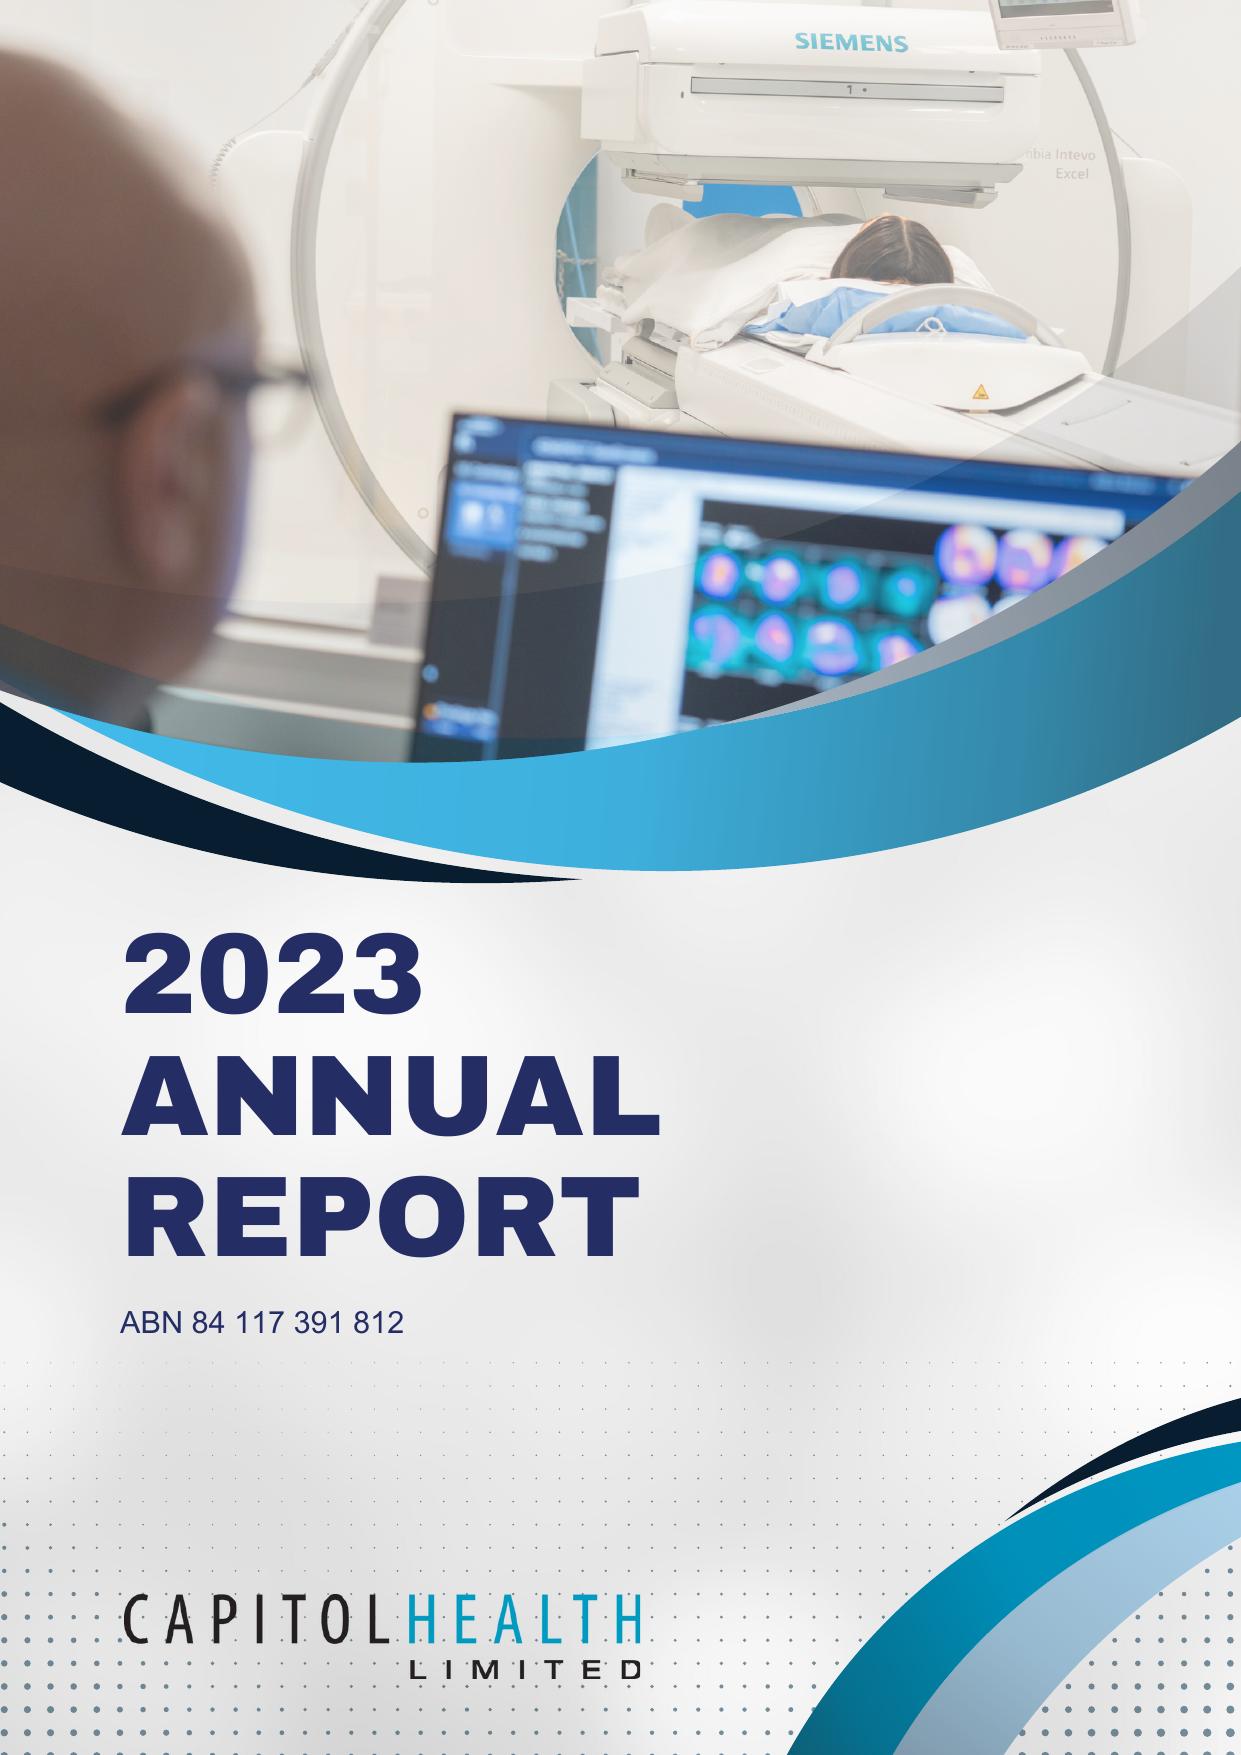 NESA 2023 Annual Report